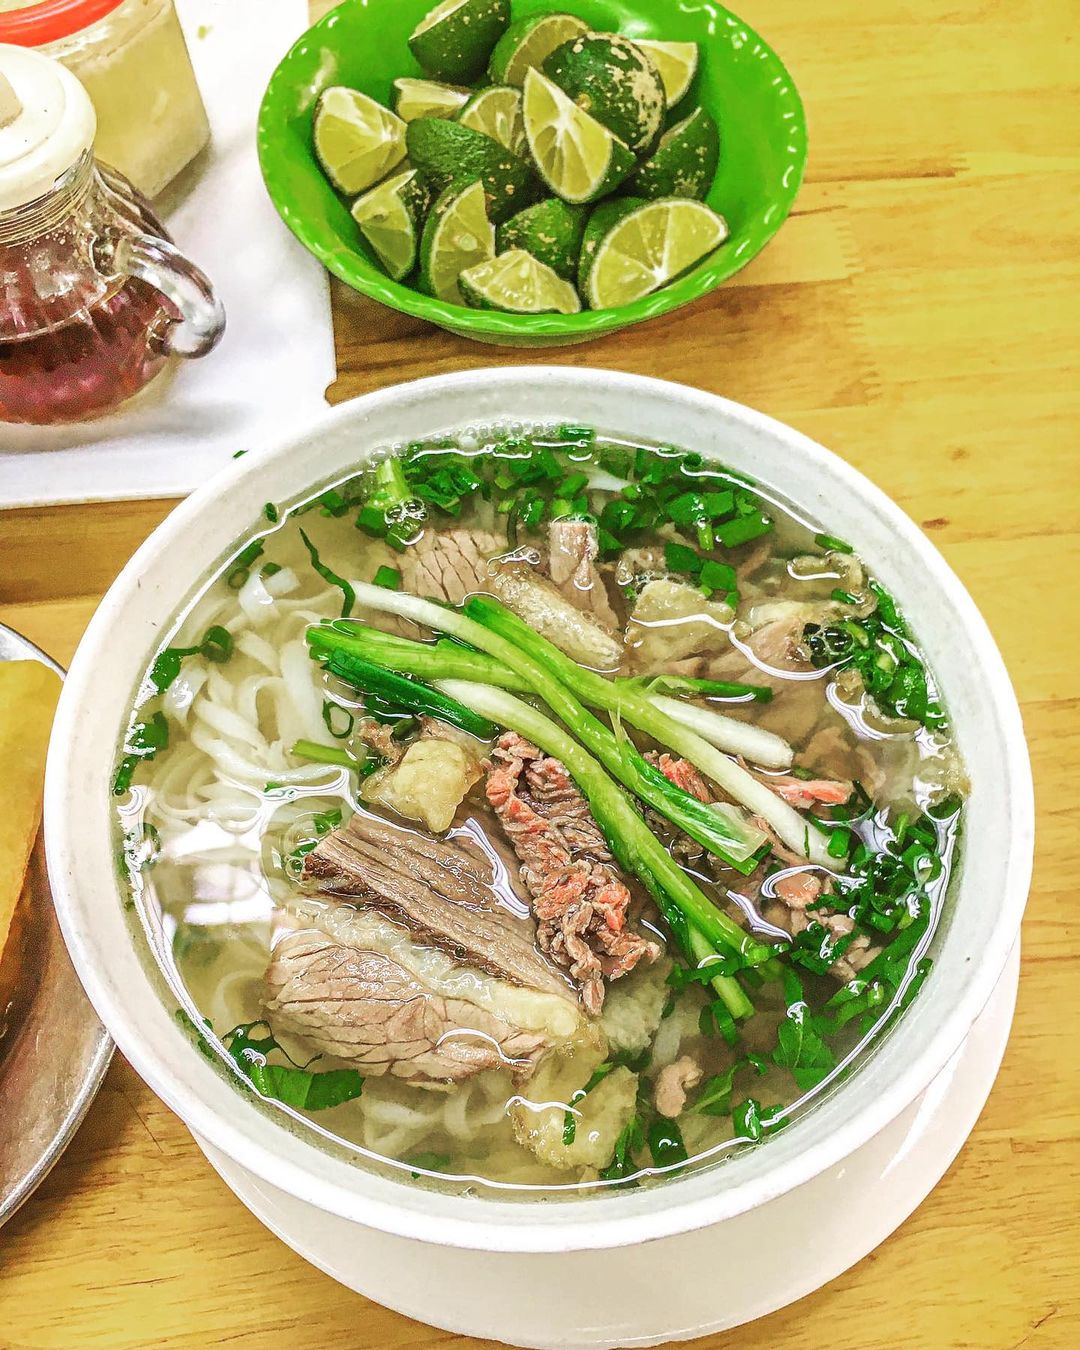 Northern Vietnamese food